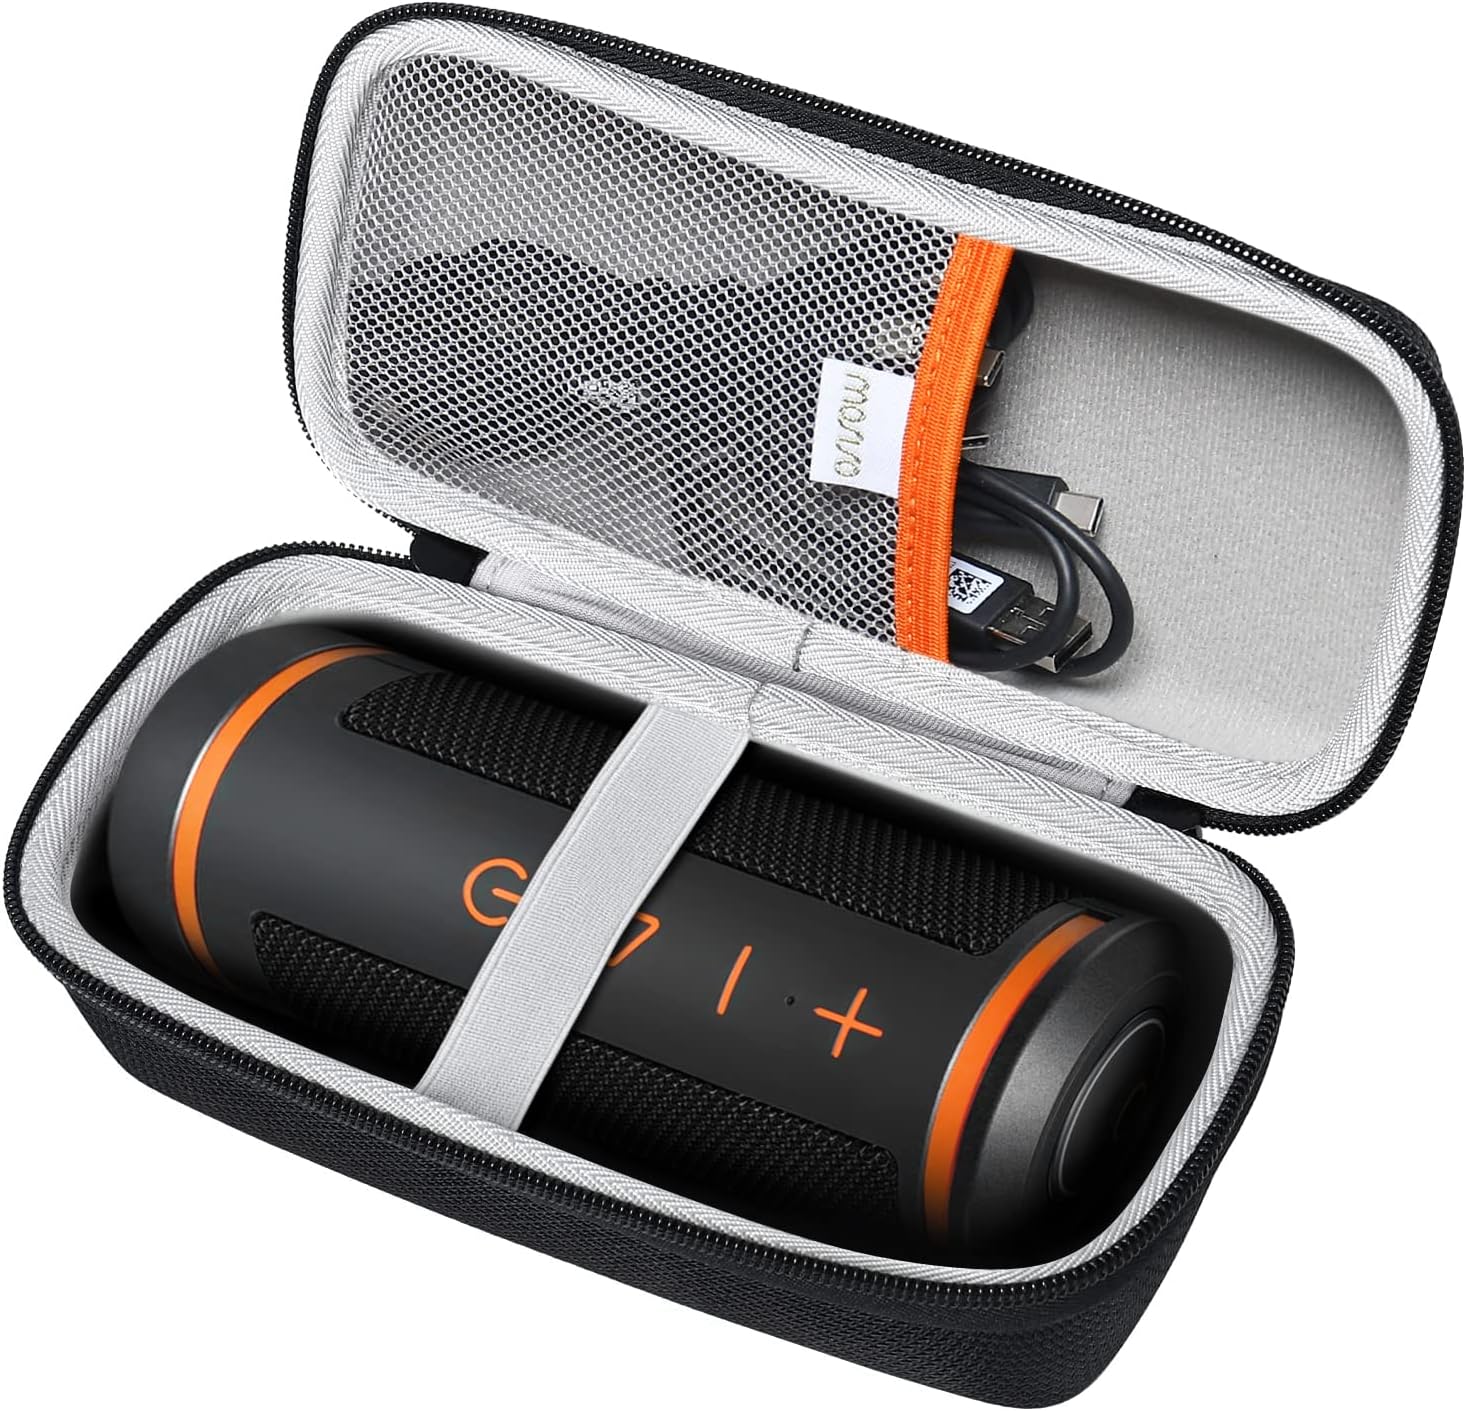 ກະເປົ໋າພົກພາແຂງ MOSISO ເຫມາະສົມກັບລໍາໂພງ GPS Bushnell Wingman, Portable Lightweight Travel Protective EVA Storage Case Bag with Handle